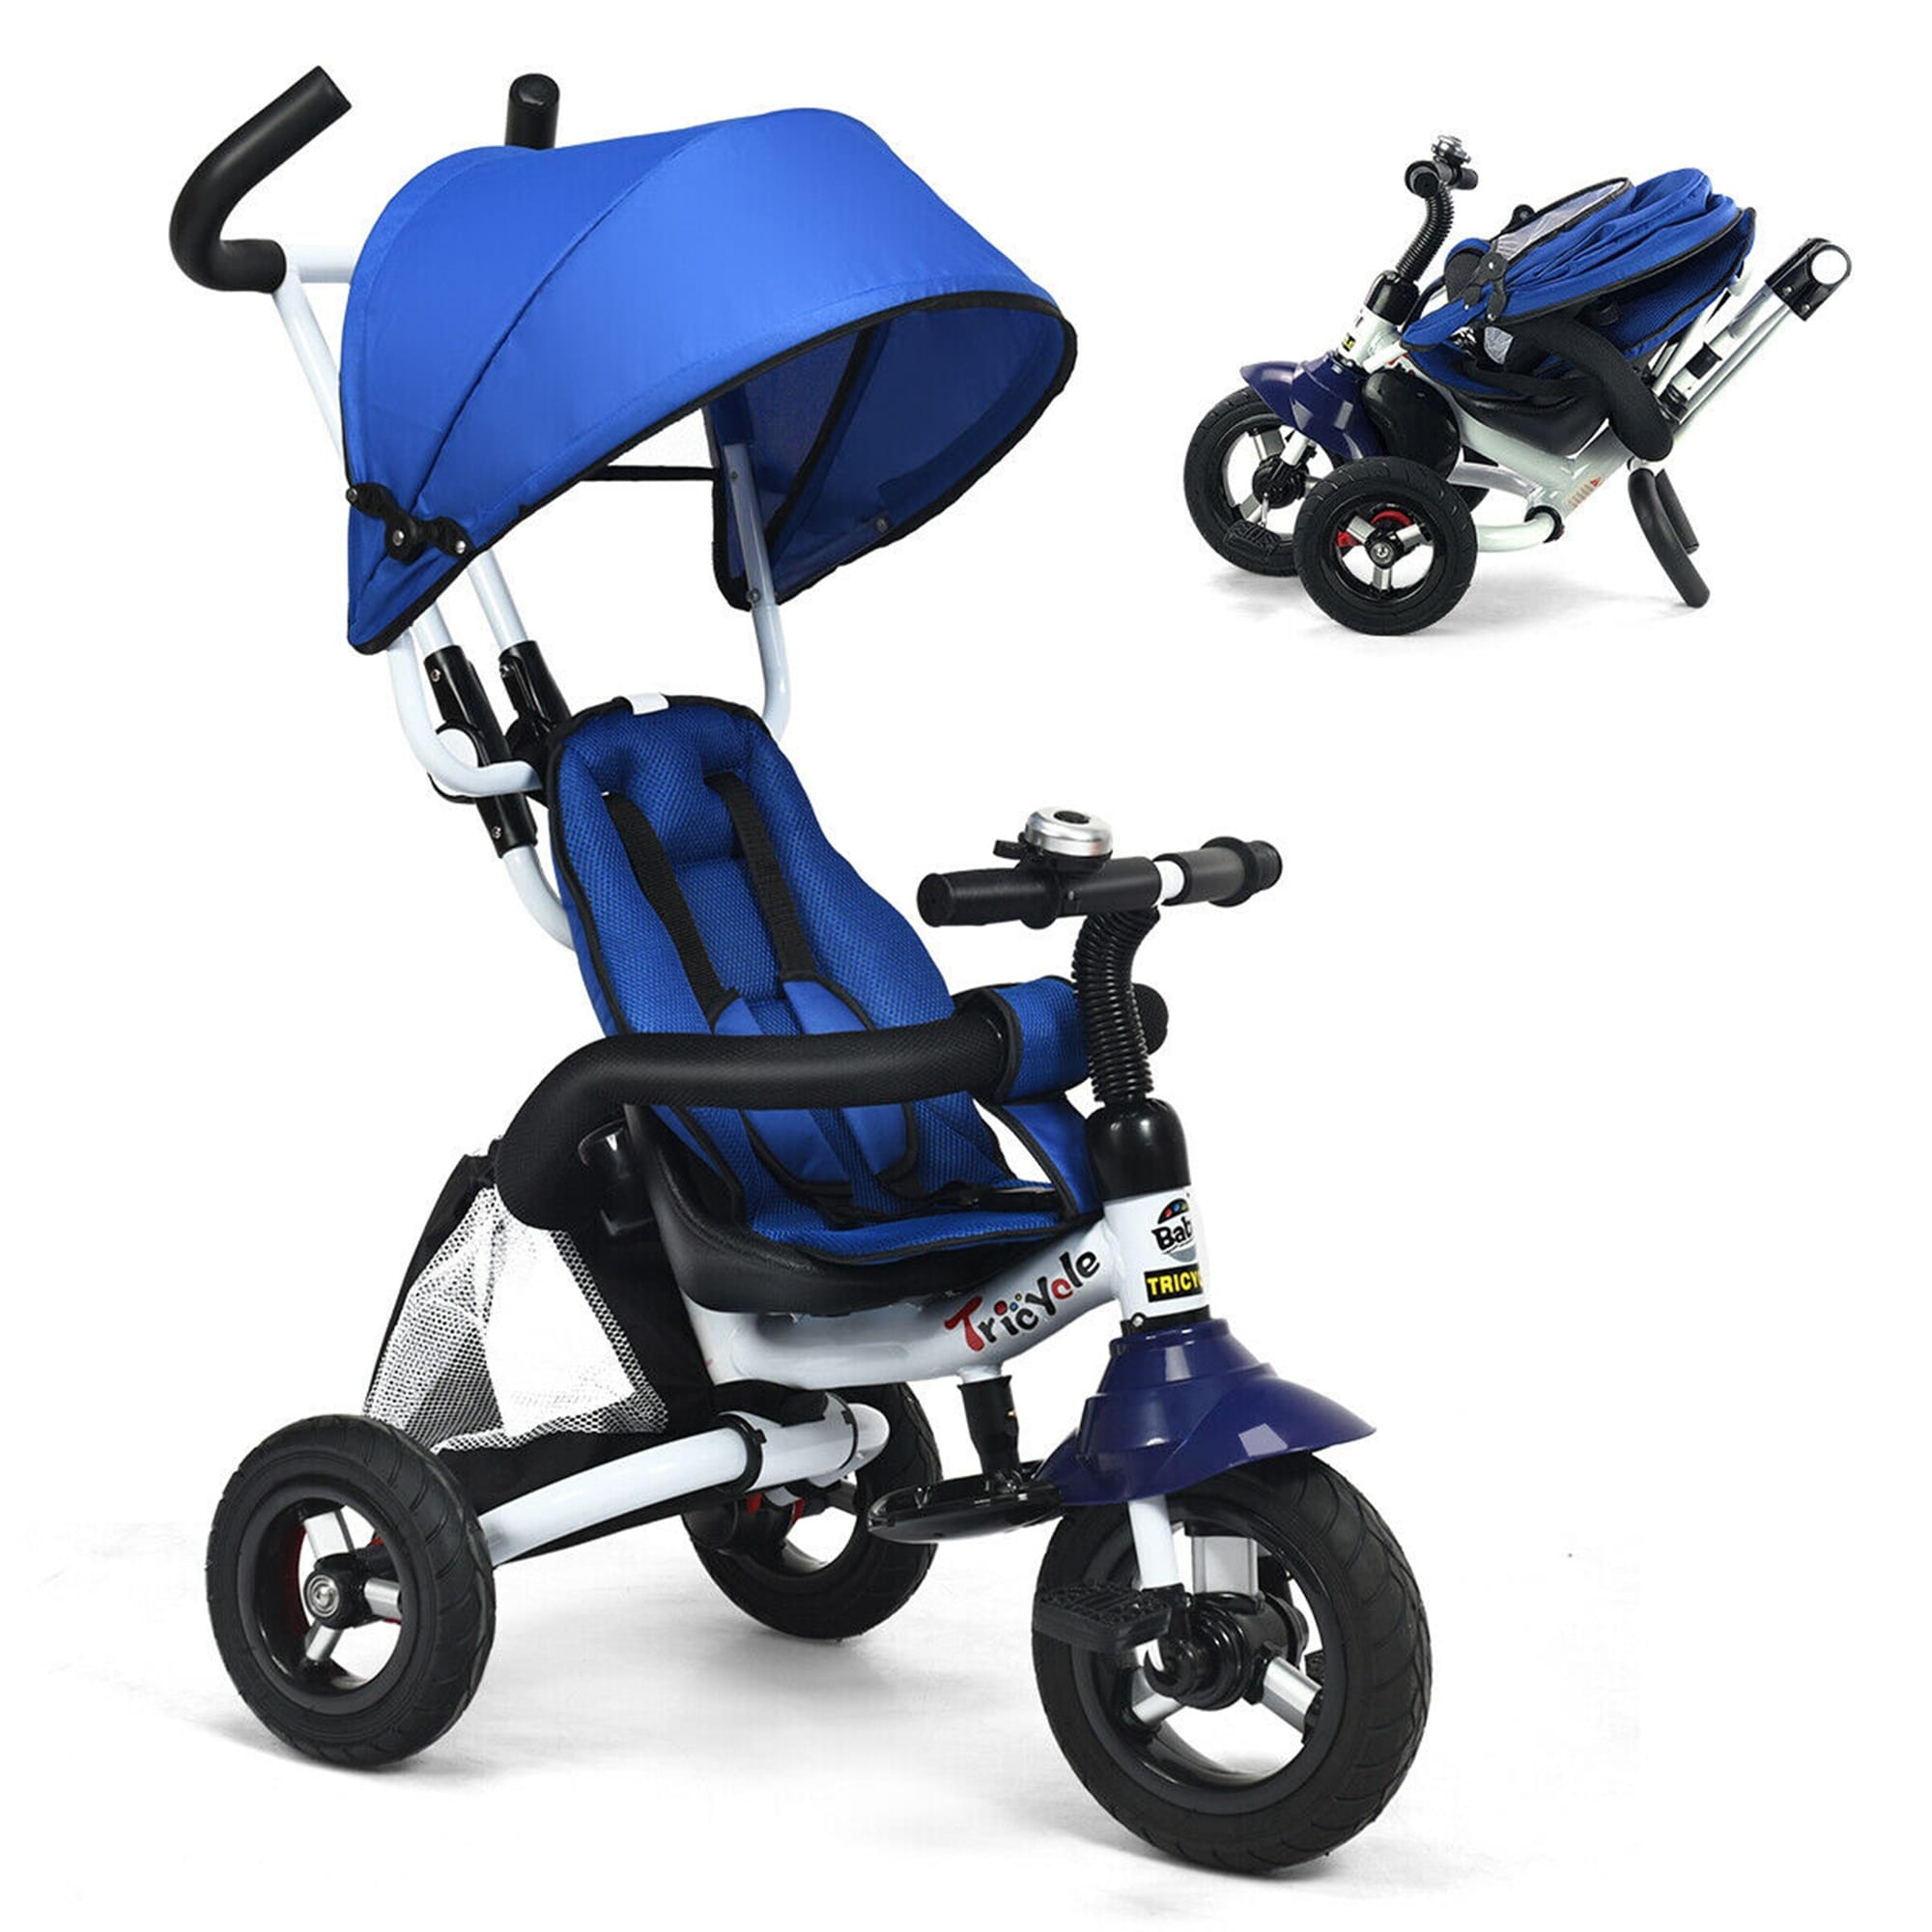 baby stroller for kids